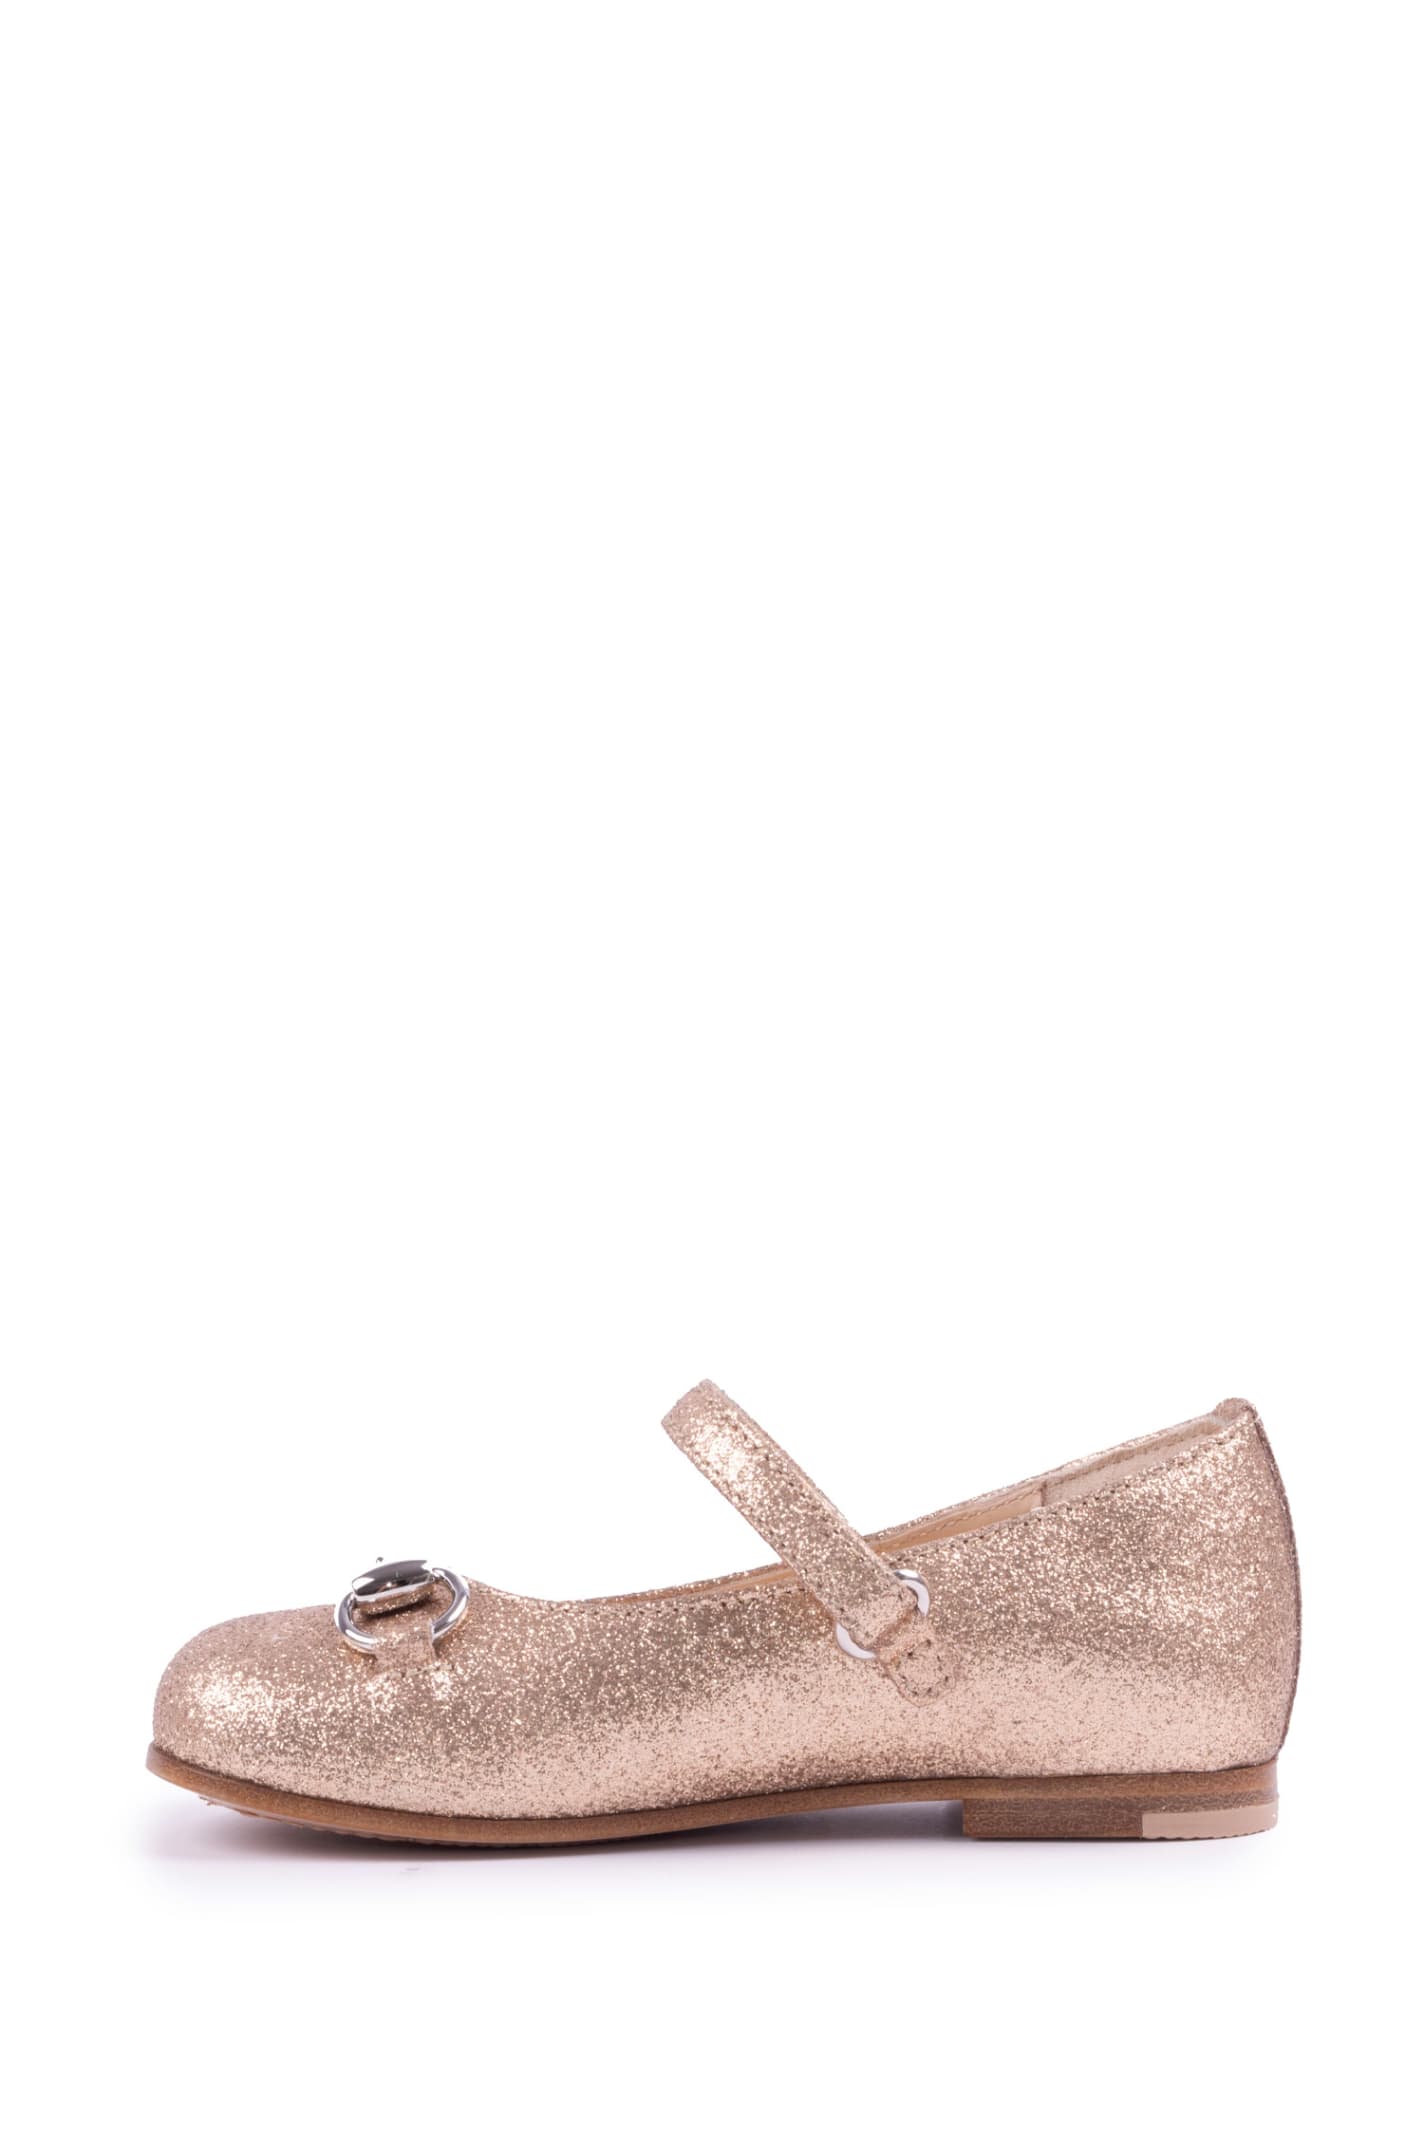 Gucci Kids horsebit detail ballerina shoes - Pink